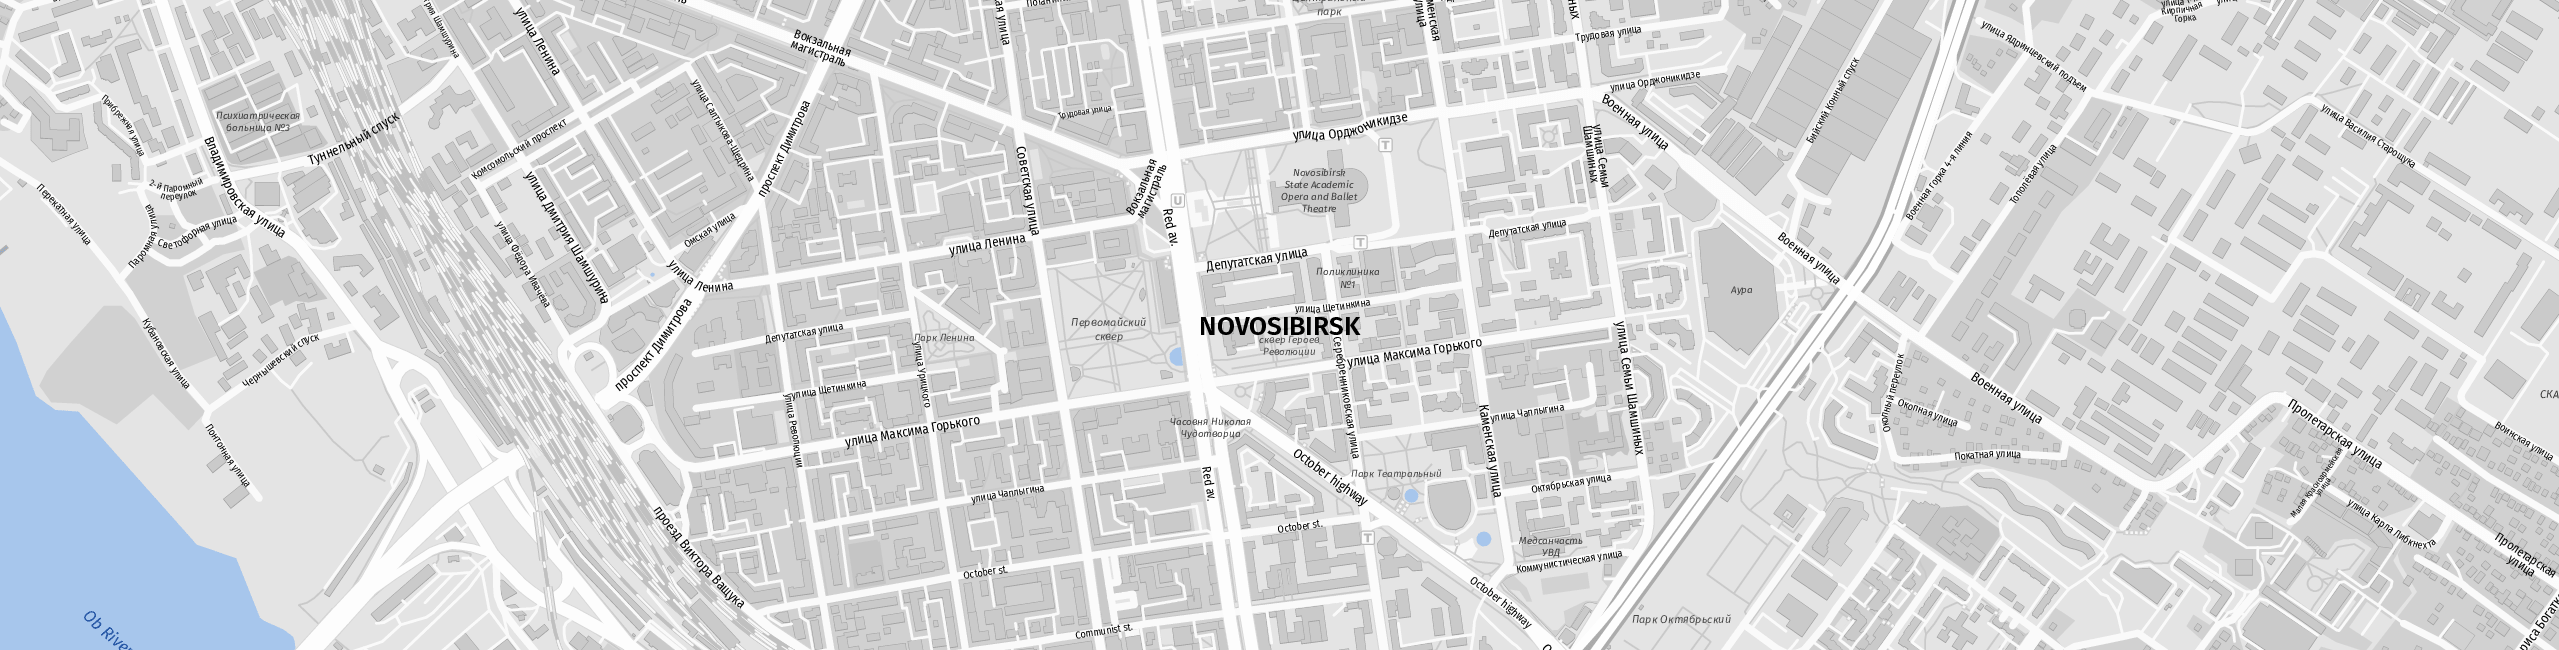 Stadtplan Novosibirsk zum Downloaden.